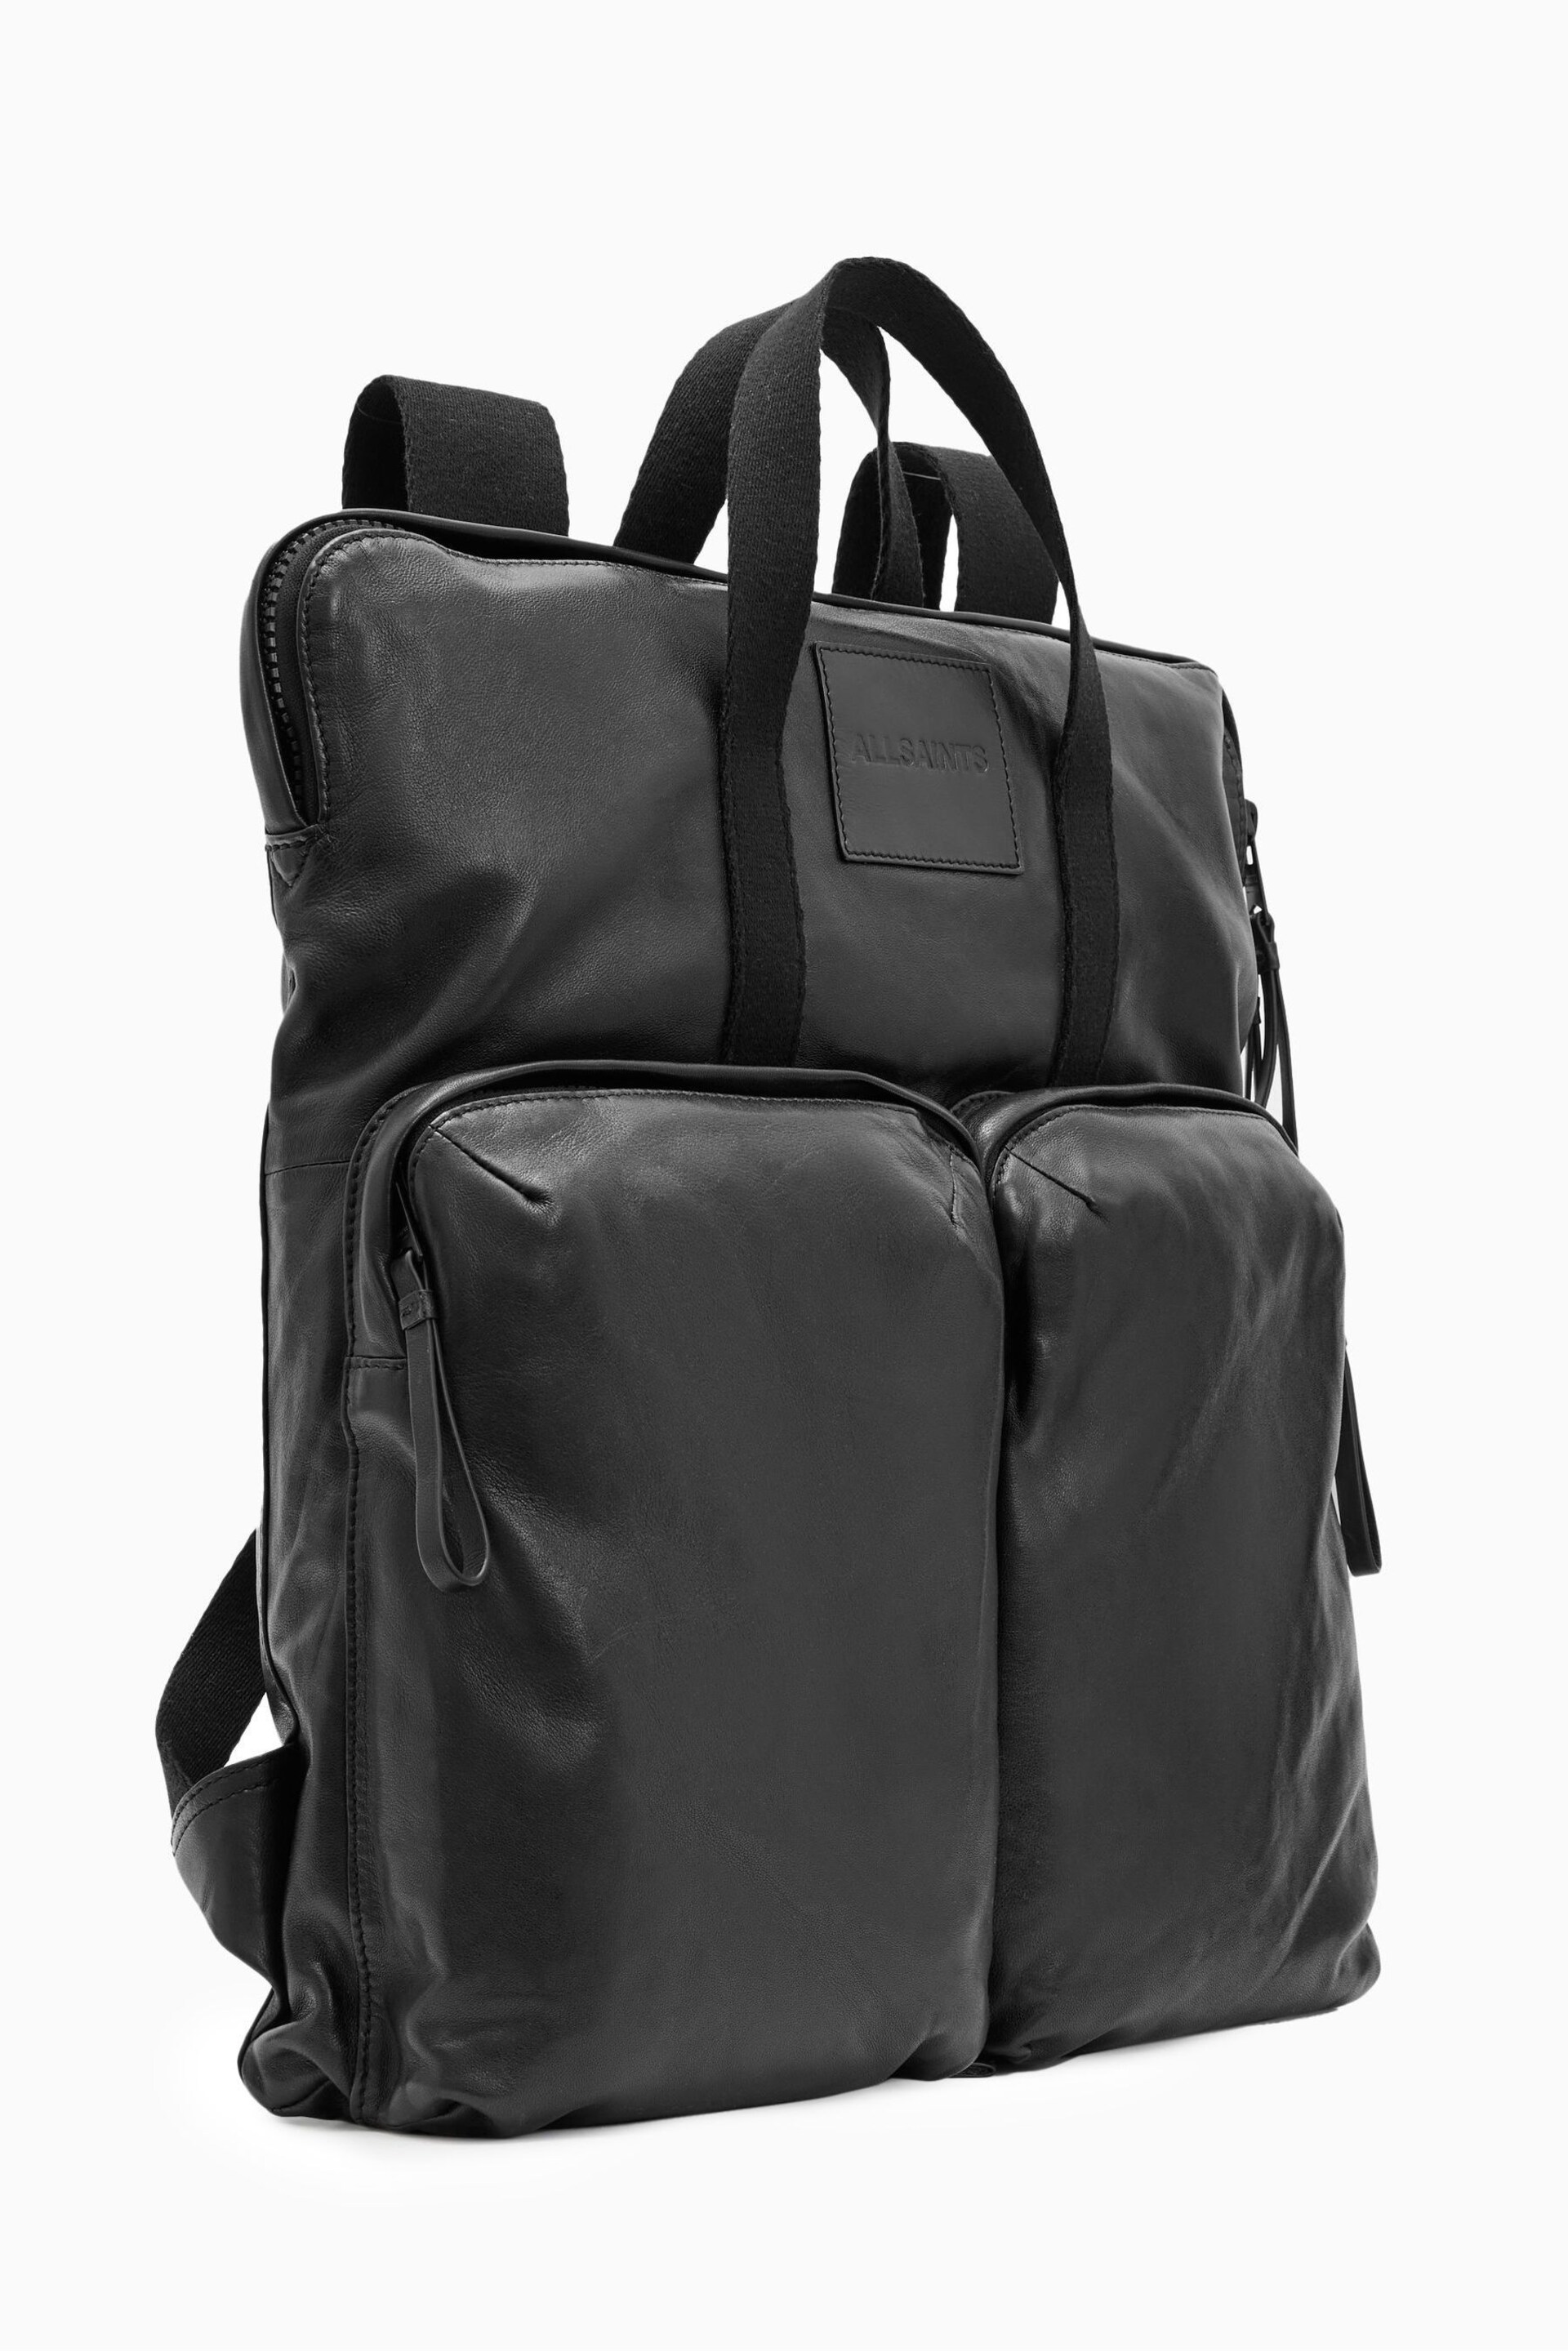 AllSaints Black Force Backpack - Image 4 of 5